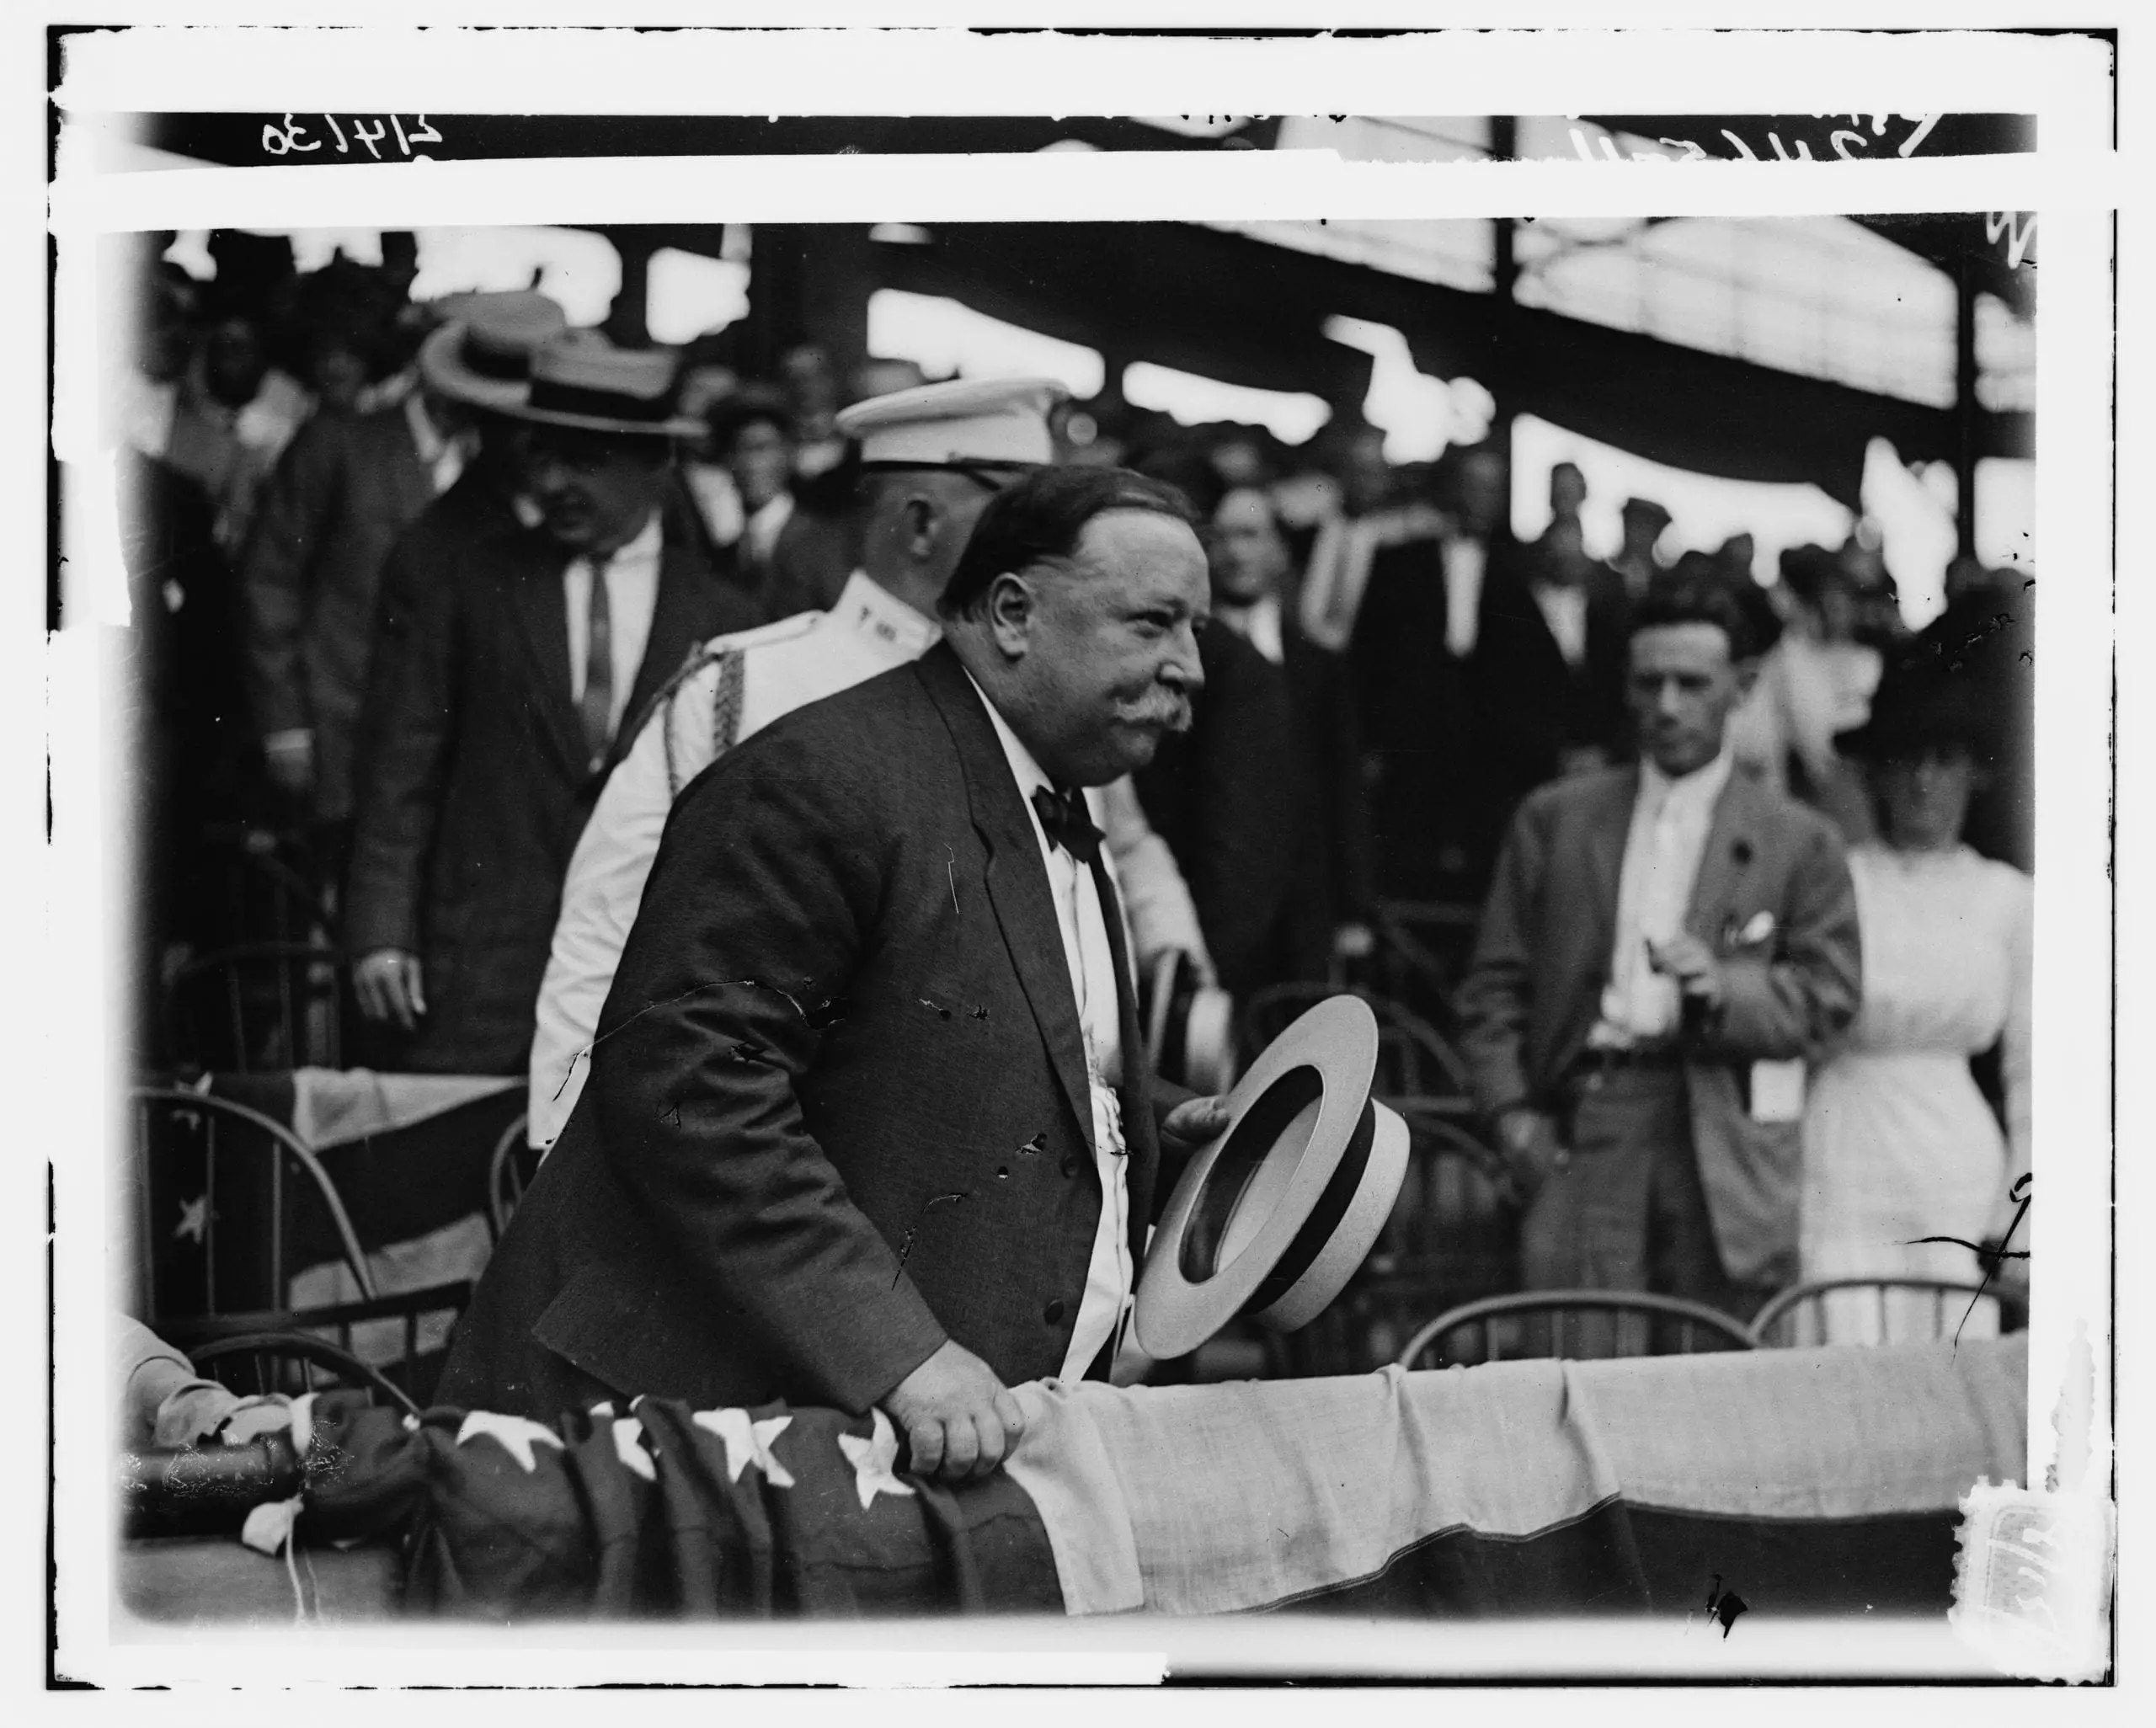 President Taft at the baseball game in 1912